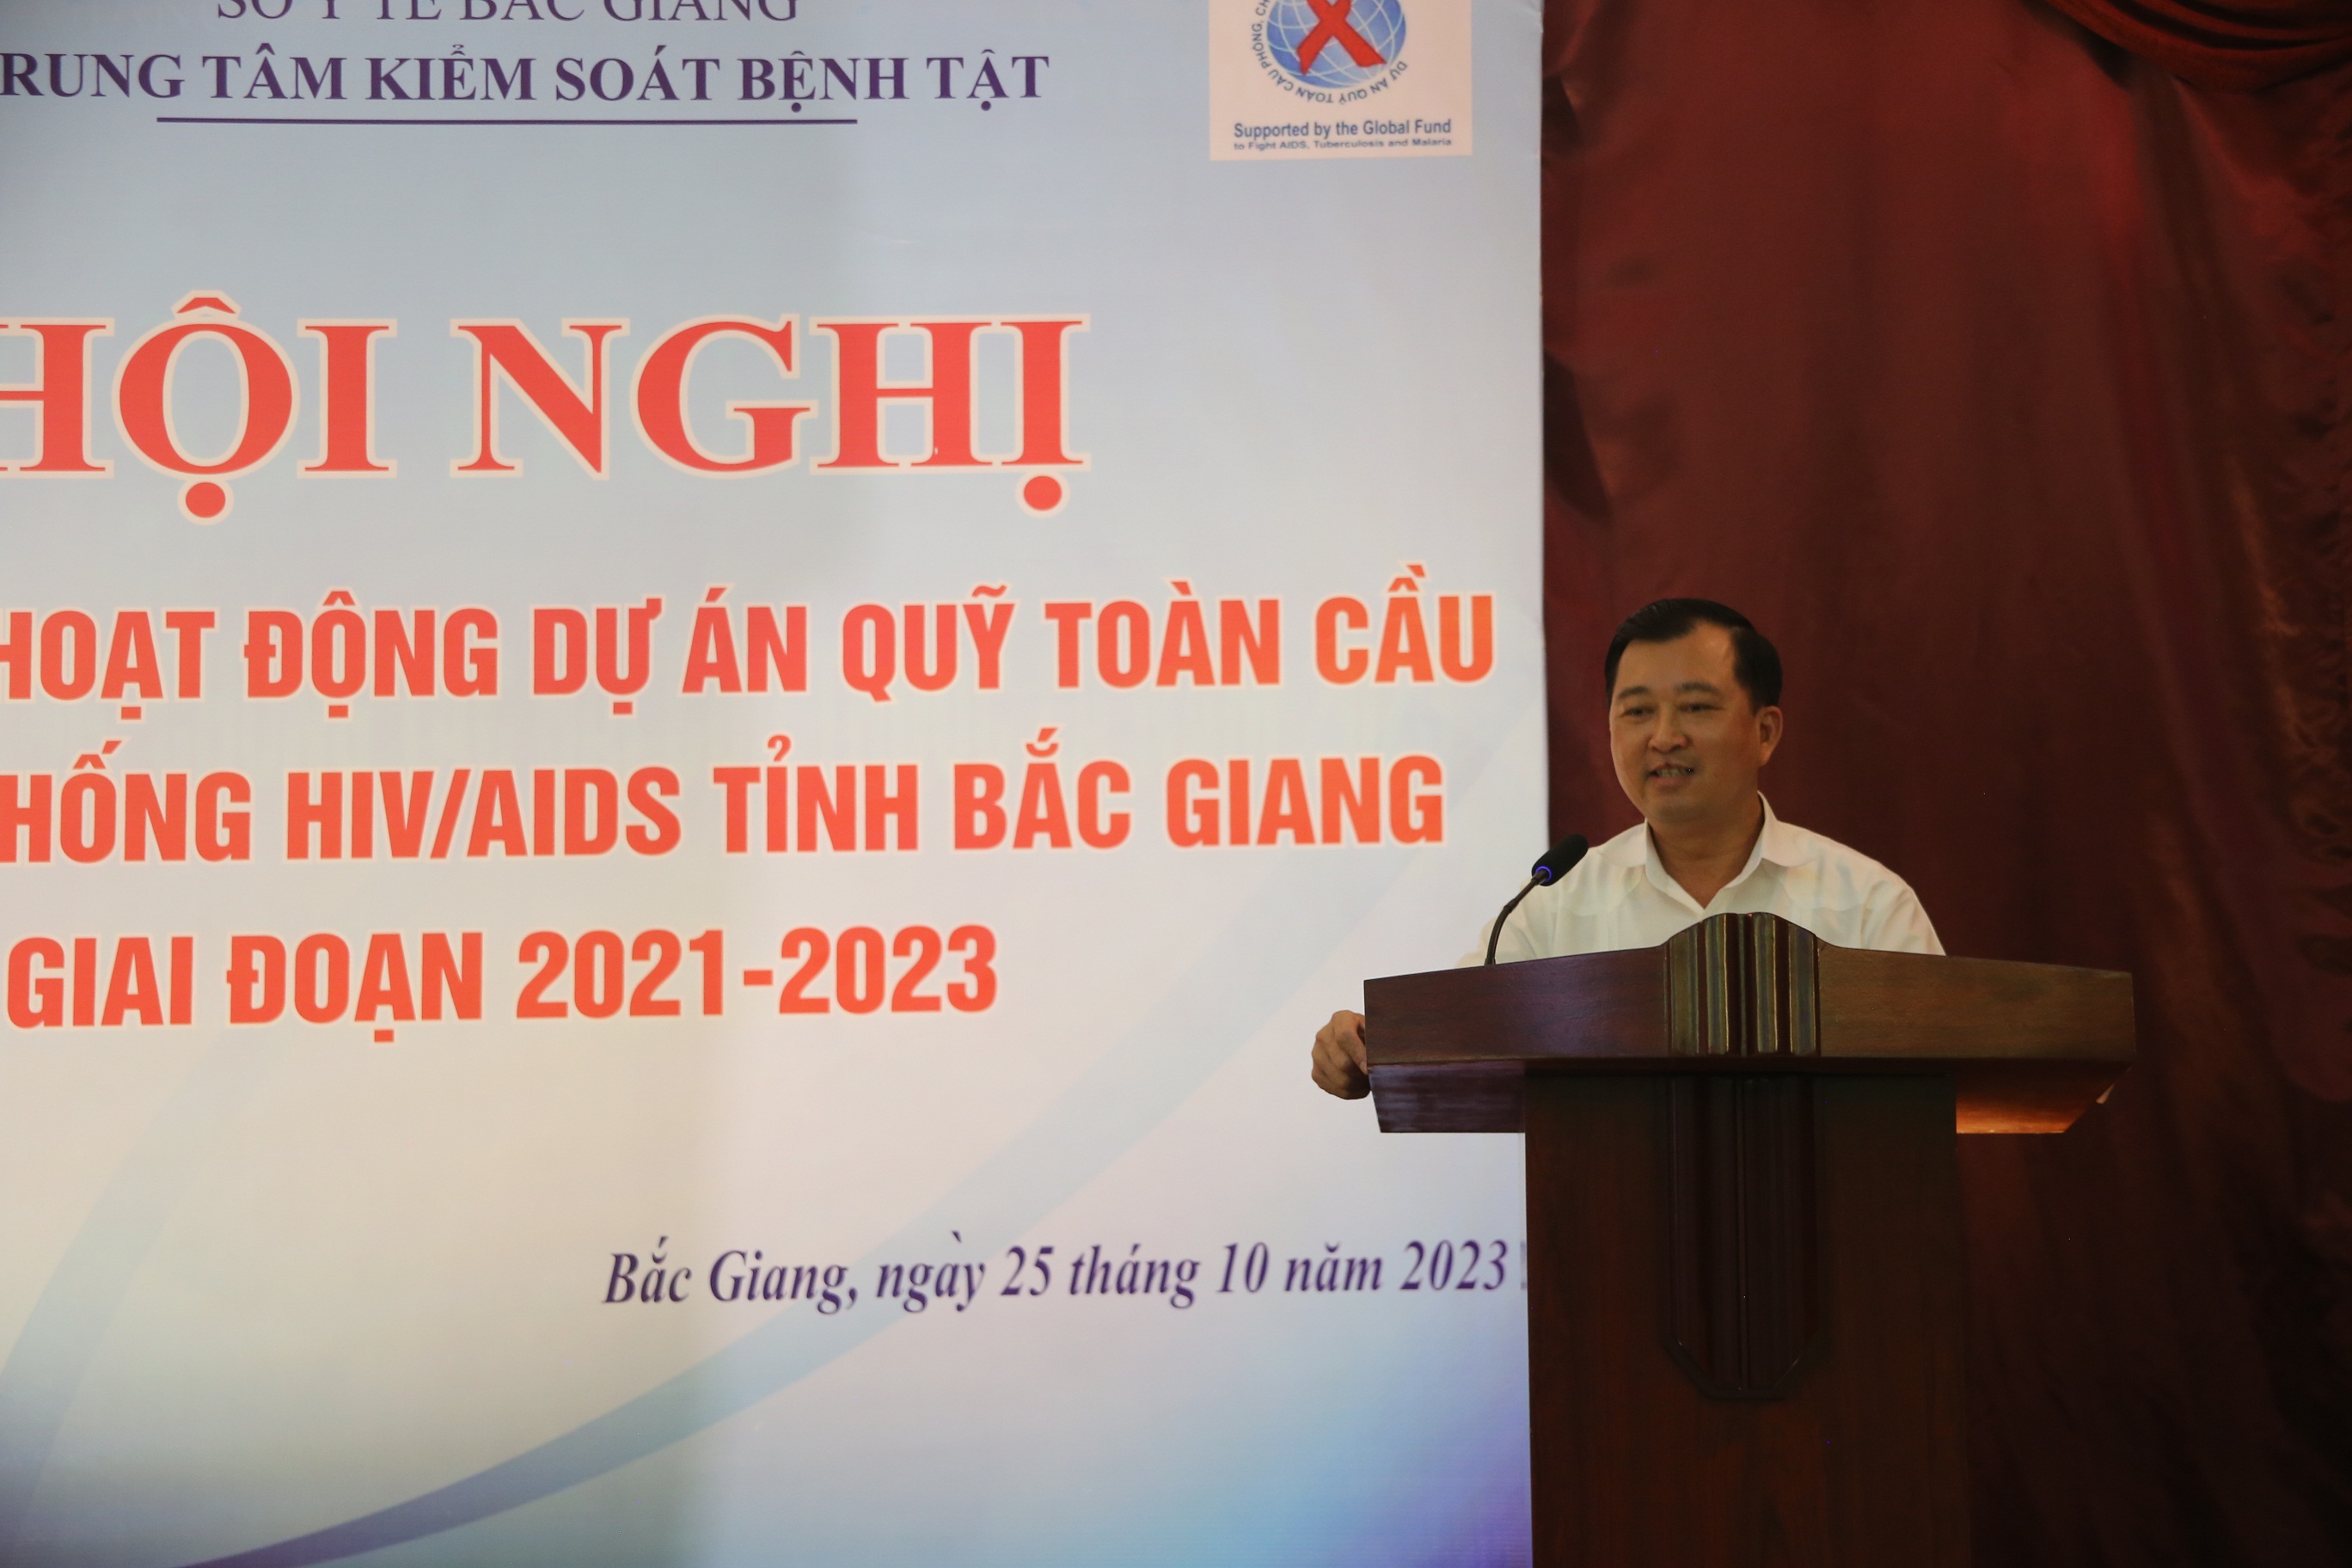 Bắc Giang: tổng kết hoạt động Dự án Quỹ toàn cầu phòng chống HIV/AIDS giai đoạn 2021-2023